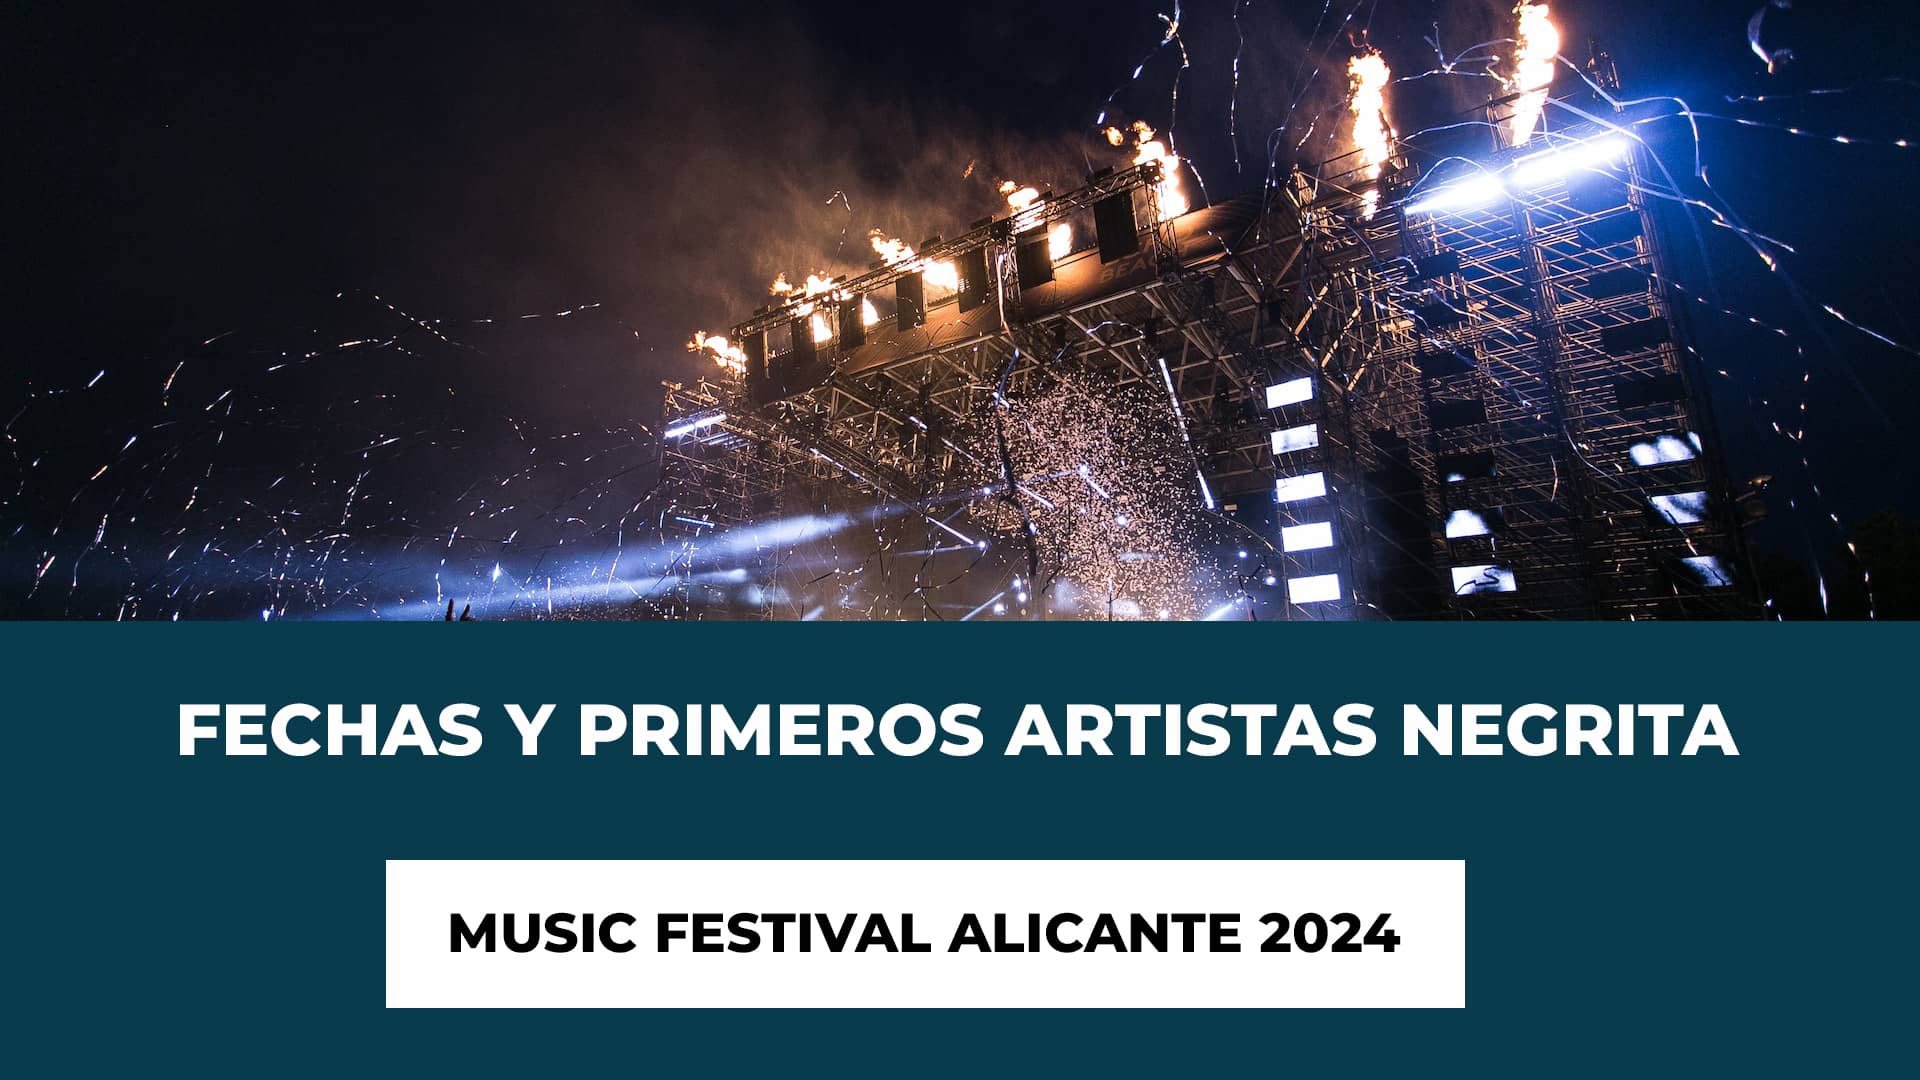 Fechas y Primeros Artistas Negrita Music Festival Alicante 2024 - Fecha y primeros artistas - Recinto - Tipos de Abonos y Precios